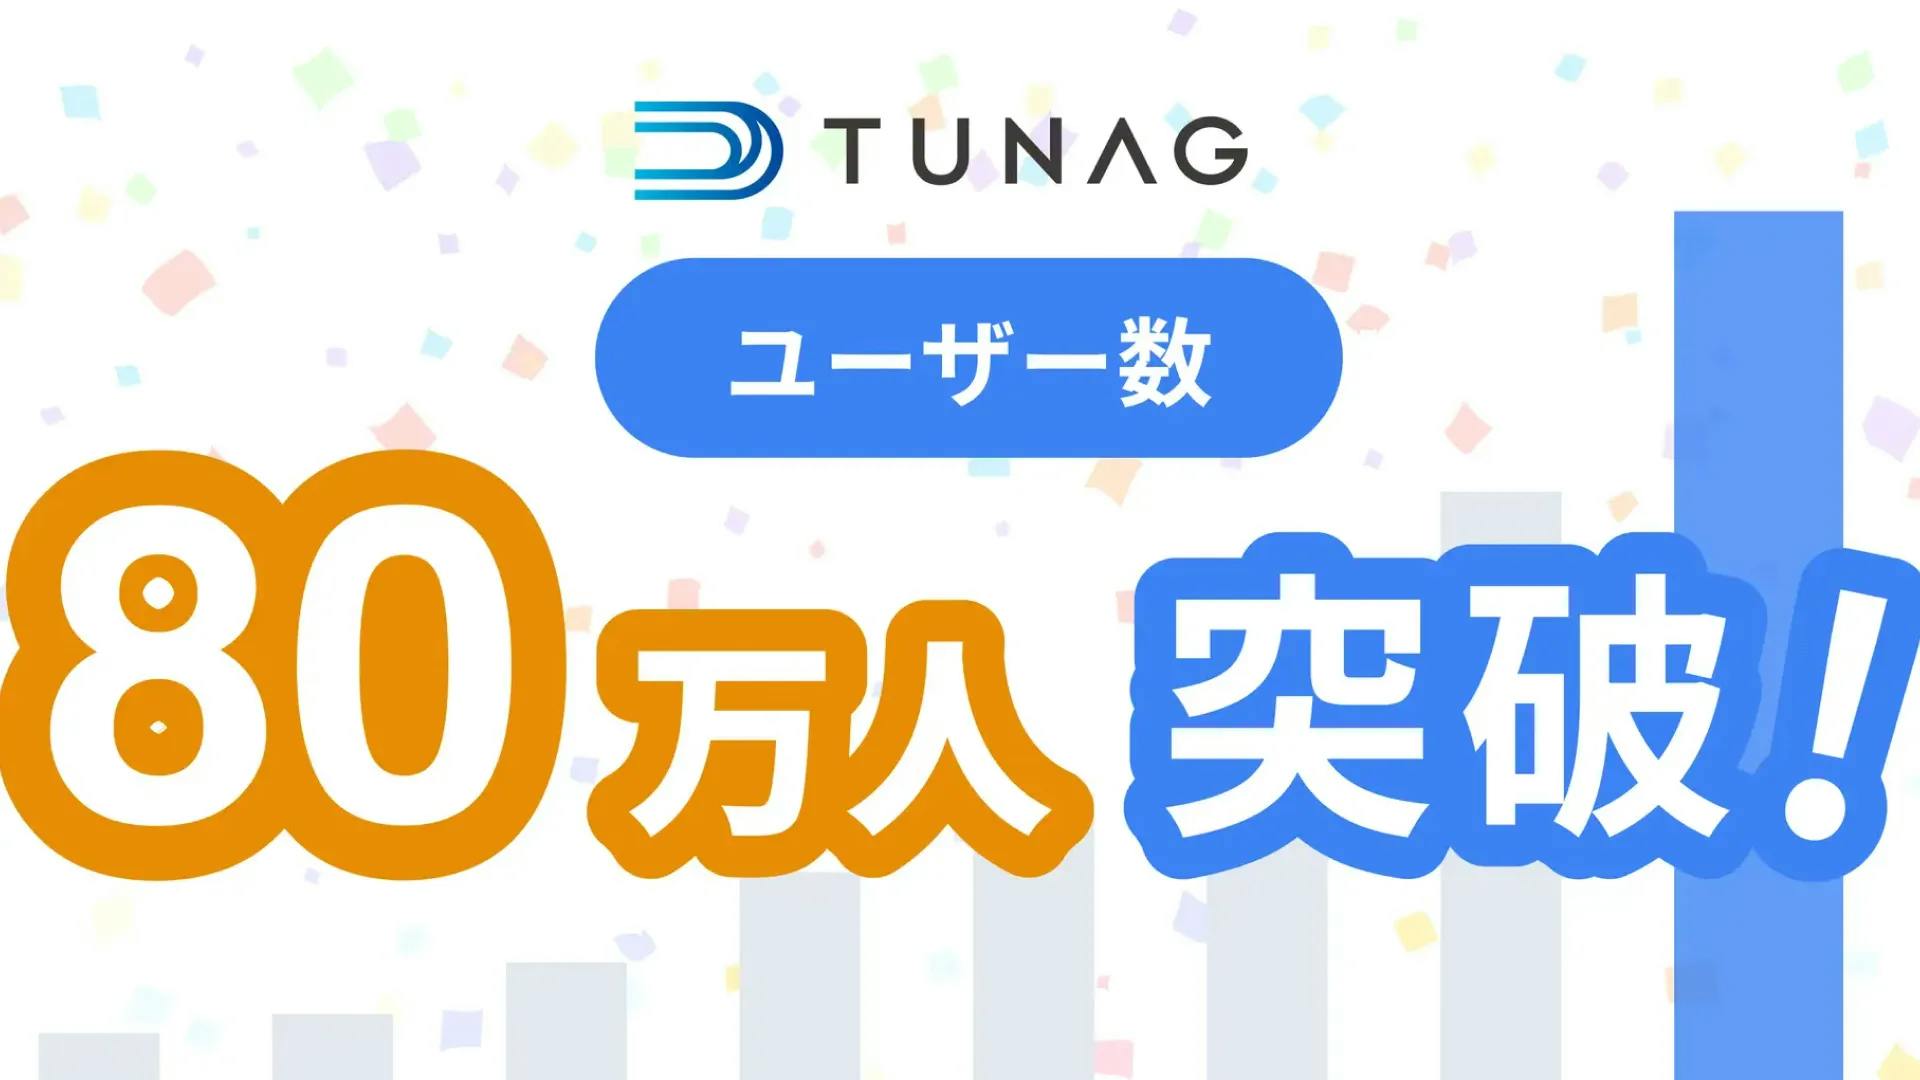 スマホひとつで現場組織のDXを実現する「TUNAG」、ユーザー数80万人突破！